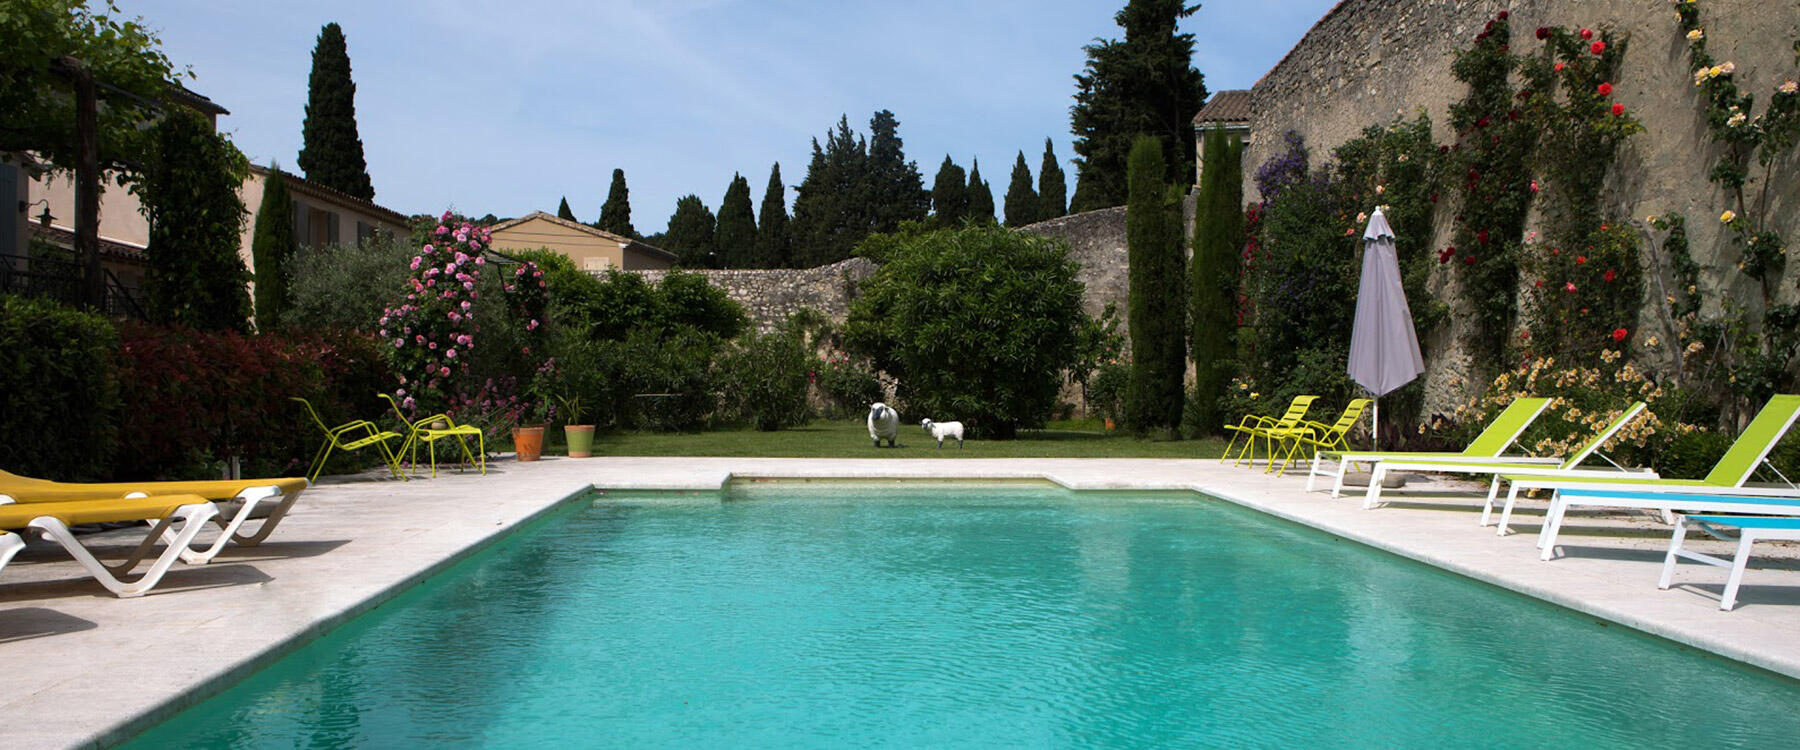 Maison d'hôtes de charme avec piscine près d'Avignon